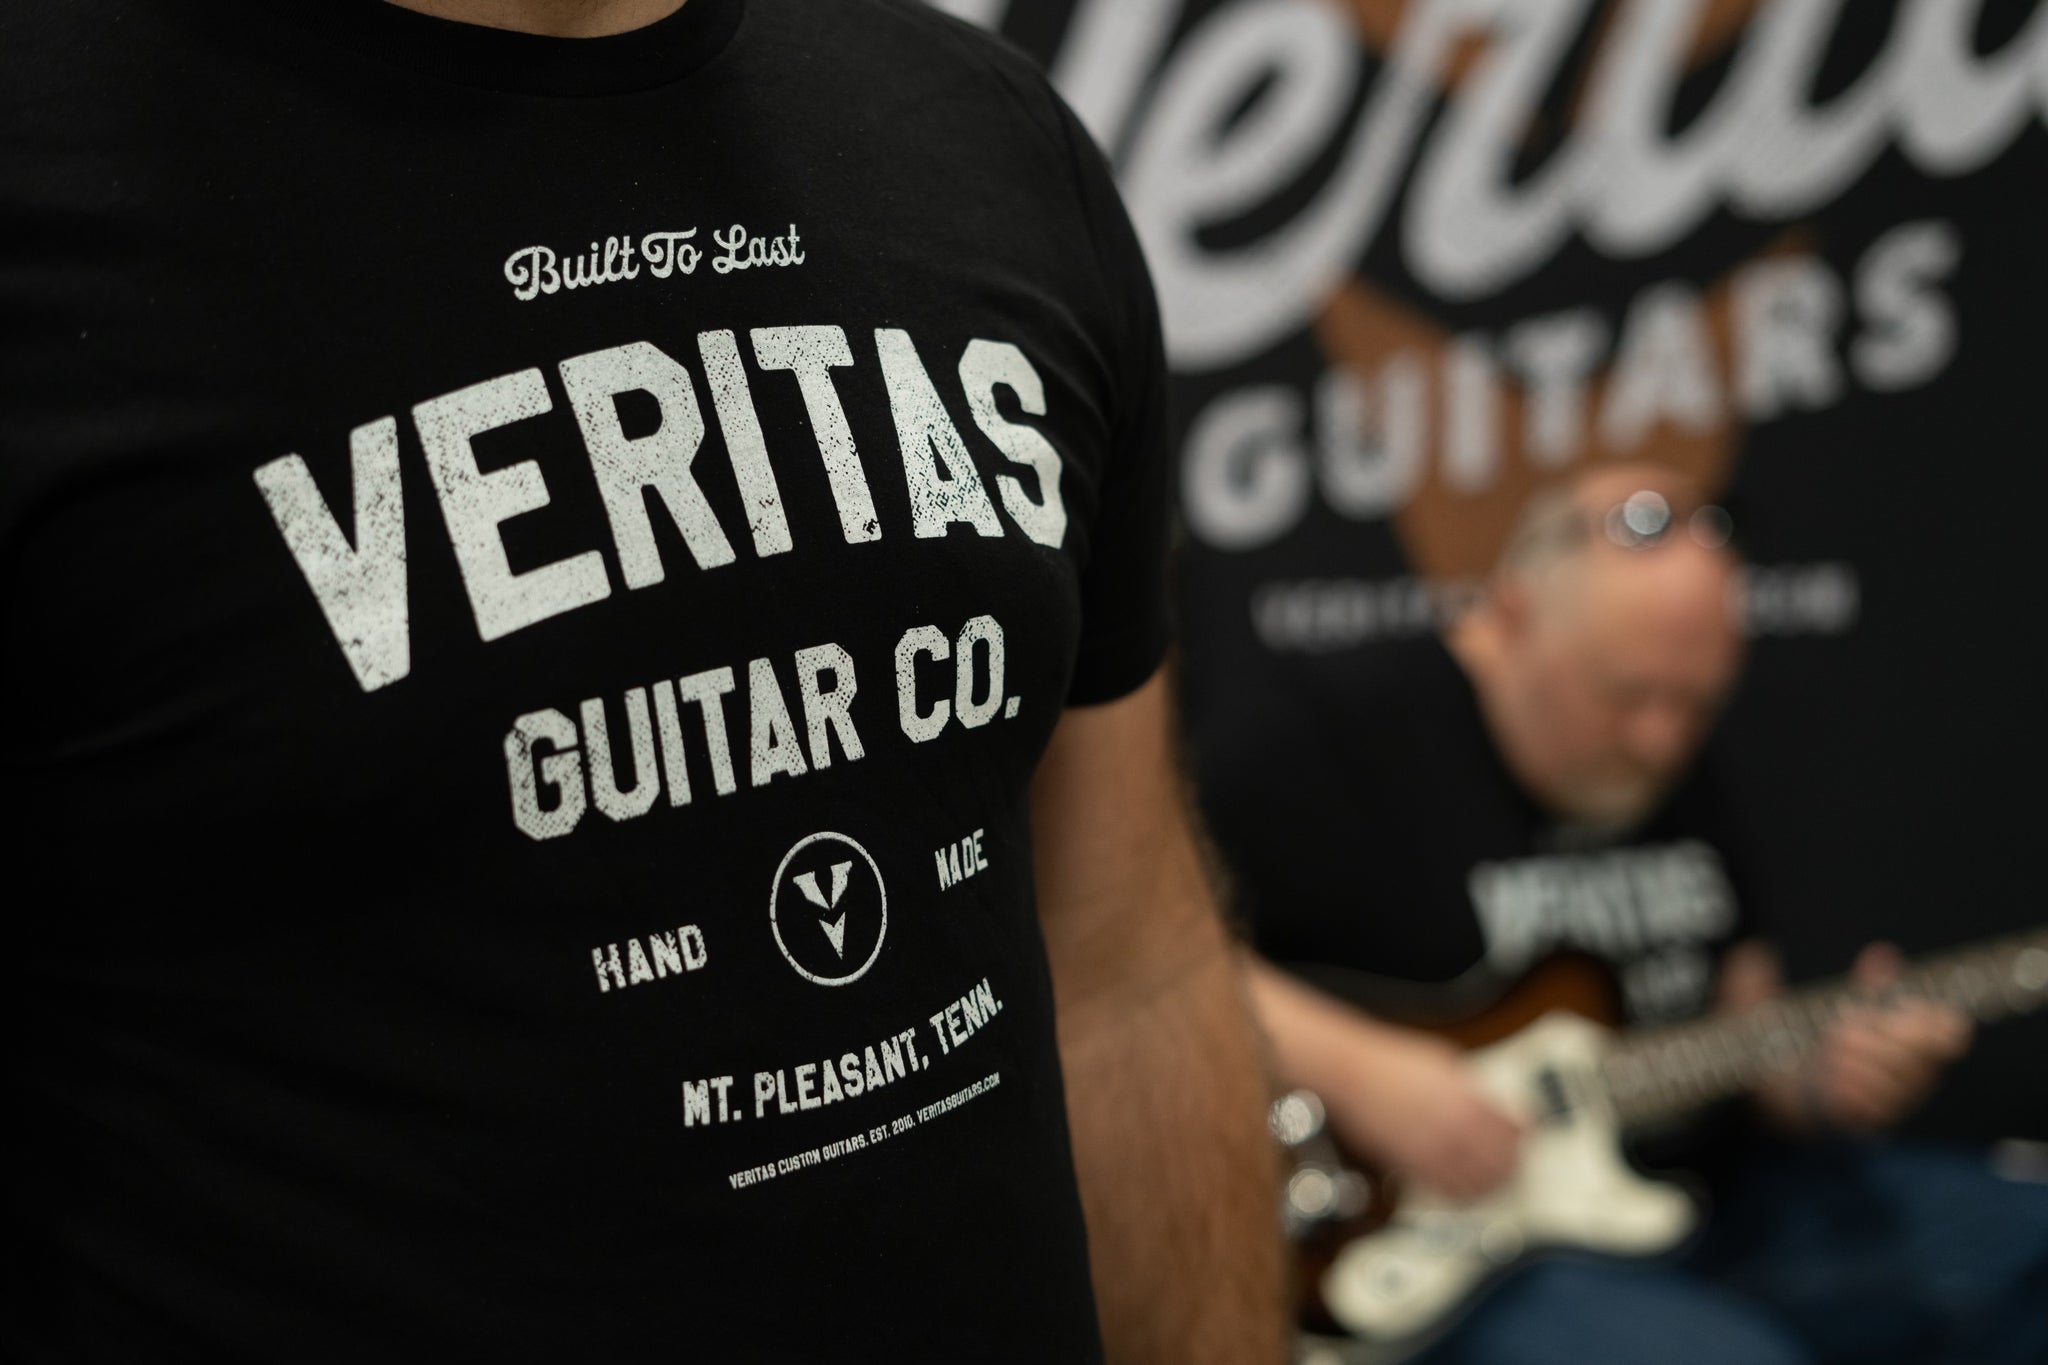 Veritas t shirt guitarlington